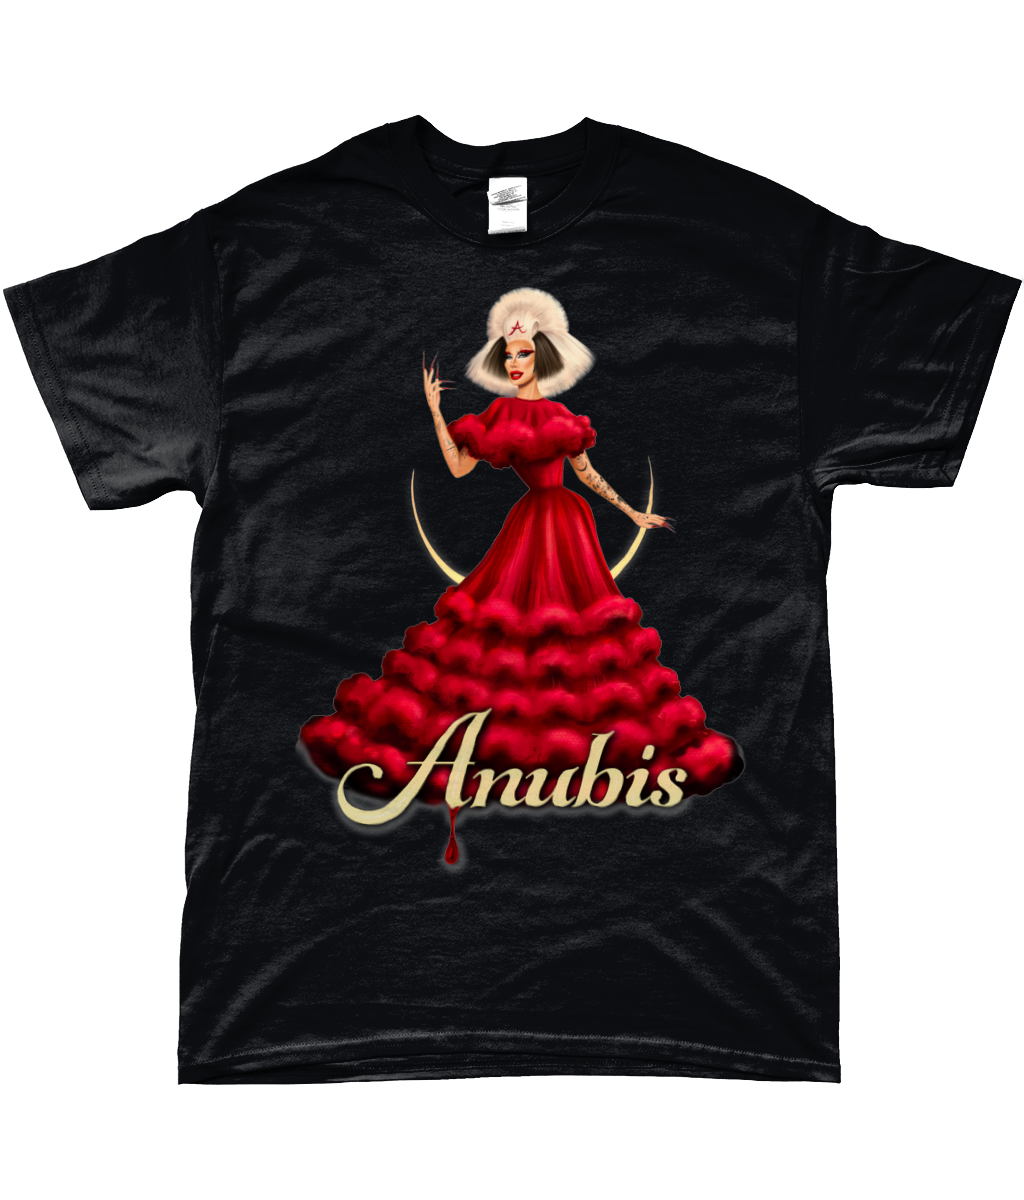 Anubis - Signature T-Shirt